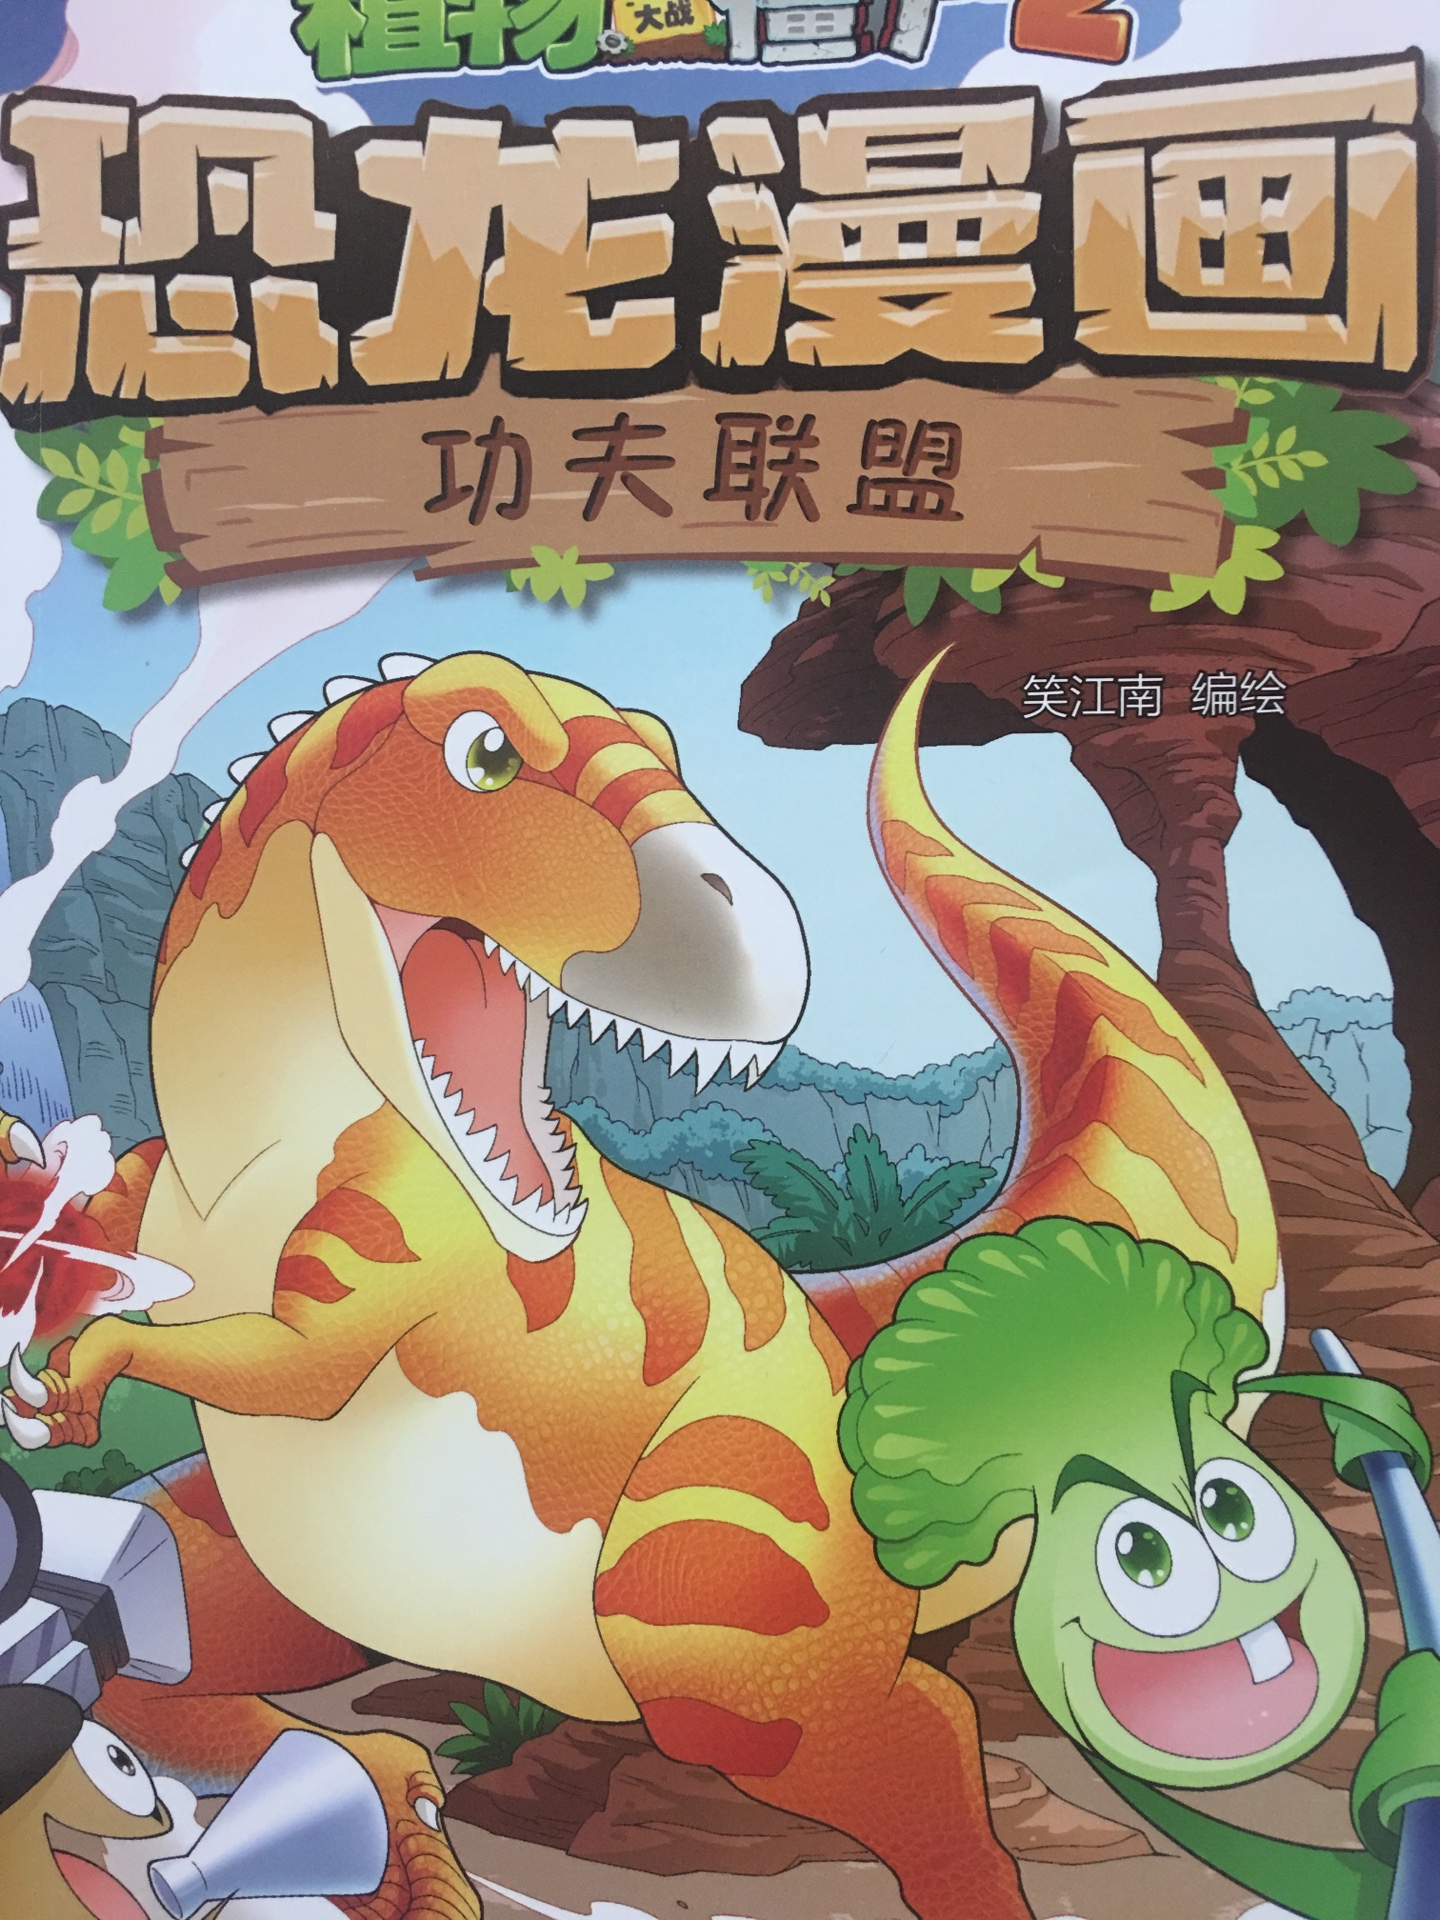 这套书比较新，恐龙主题很吸引孩子